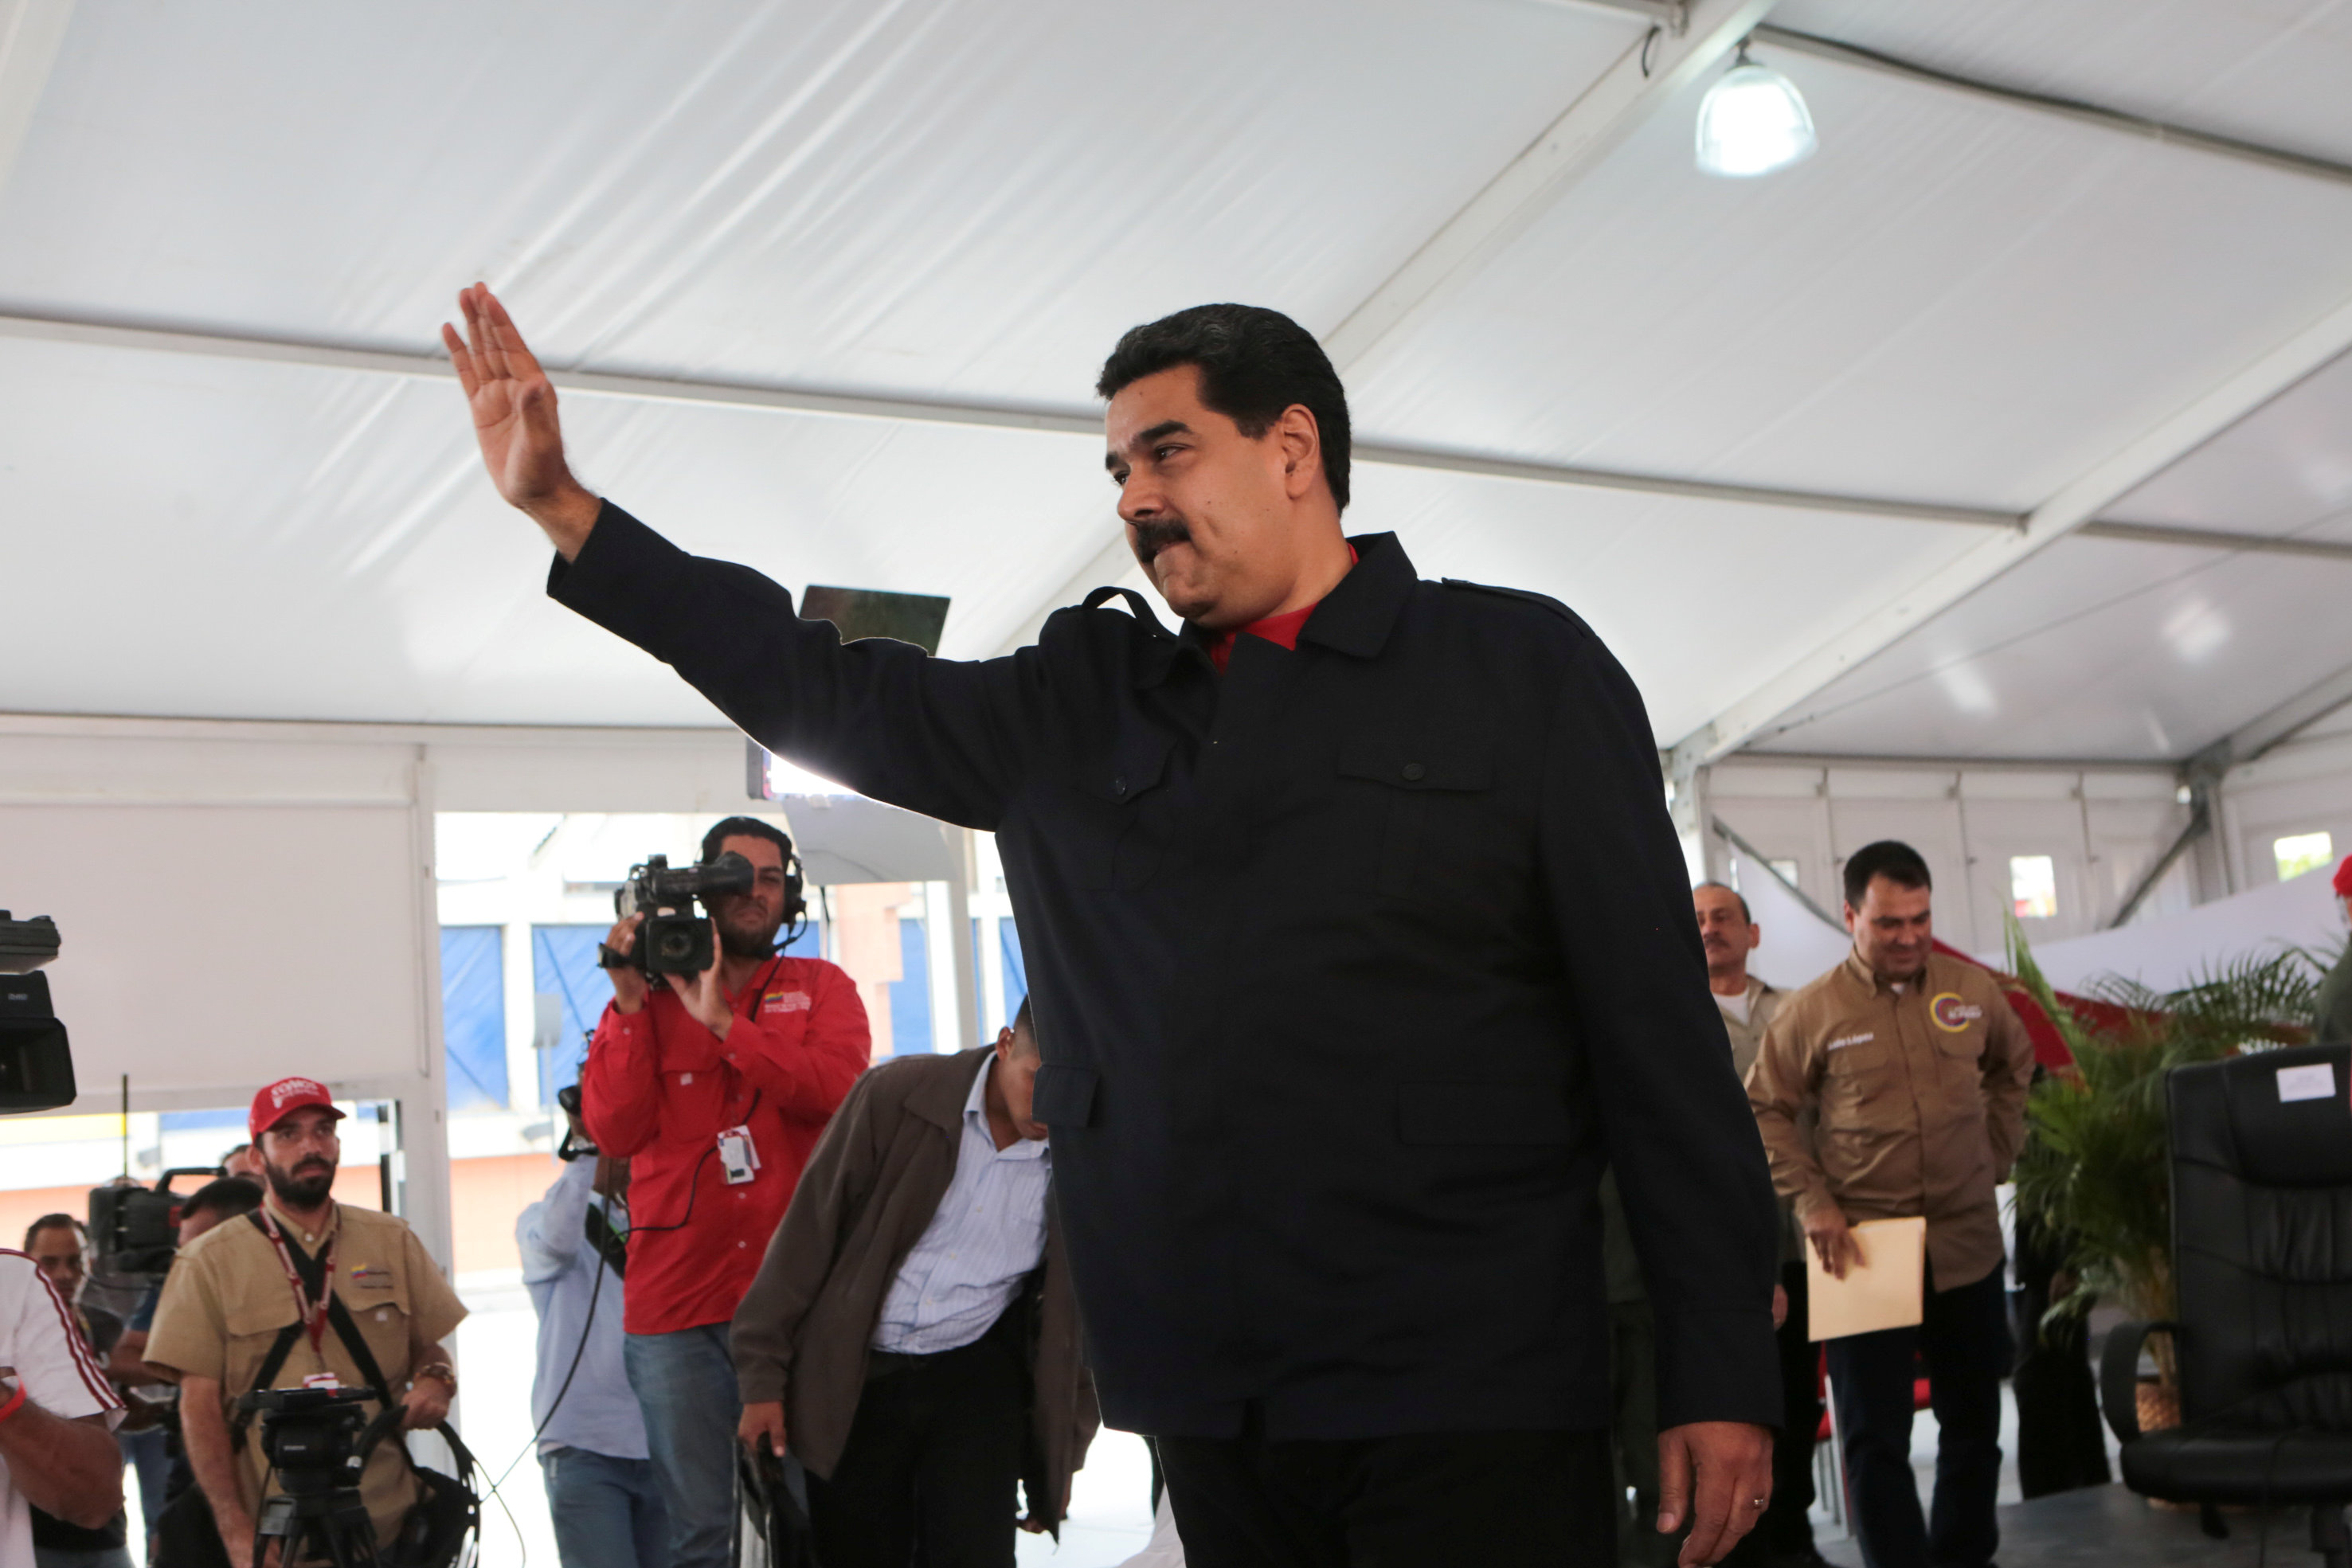 الرئيس الفنزويلى نيكولاس مادورو يحيى مؤيديه